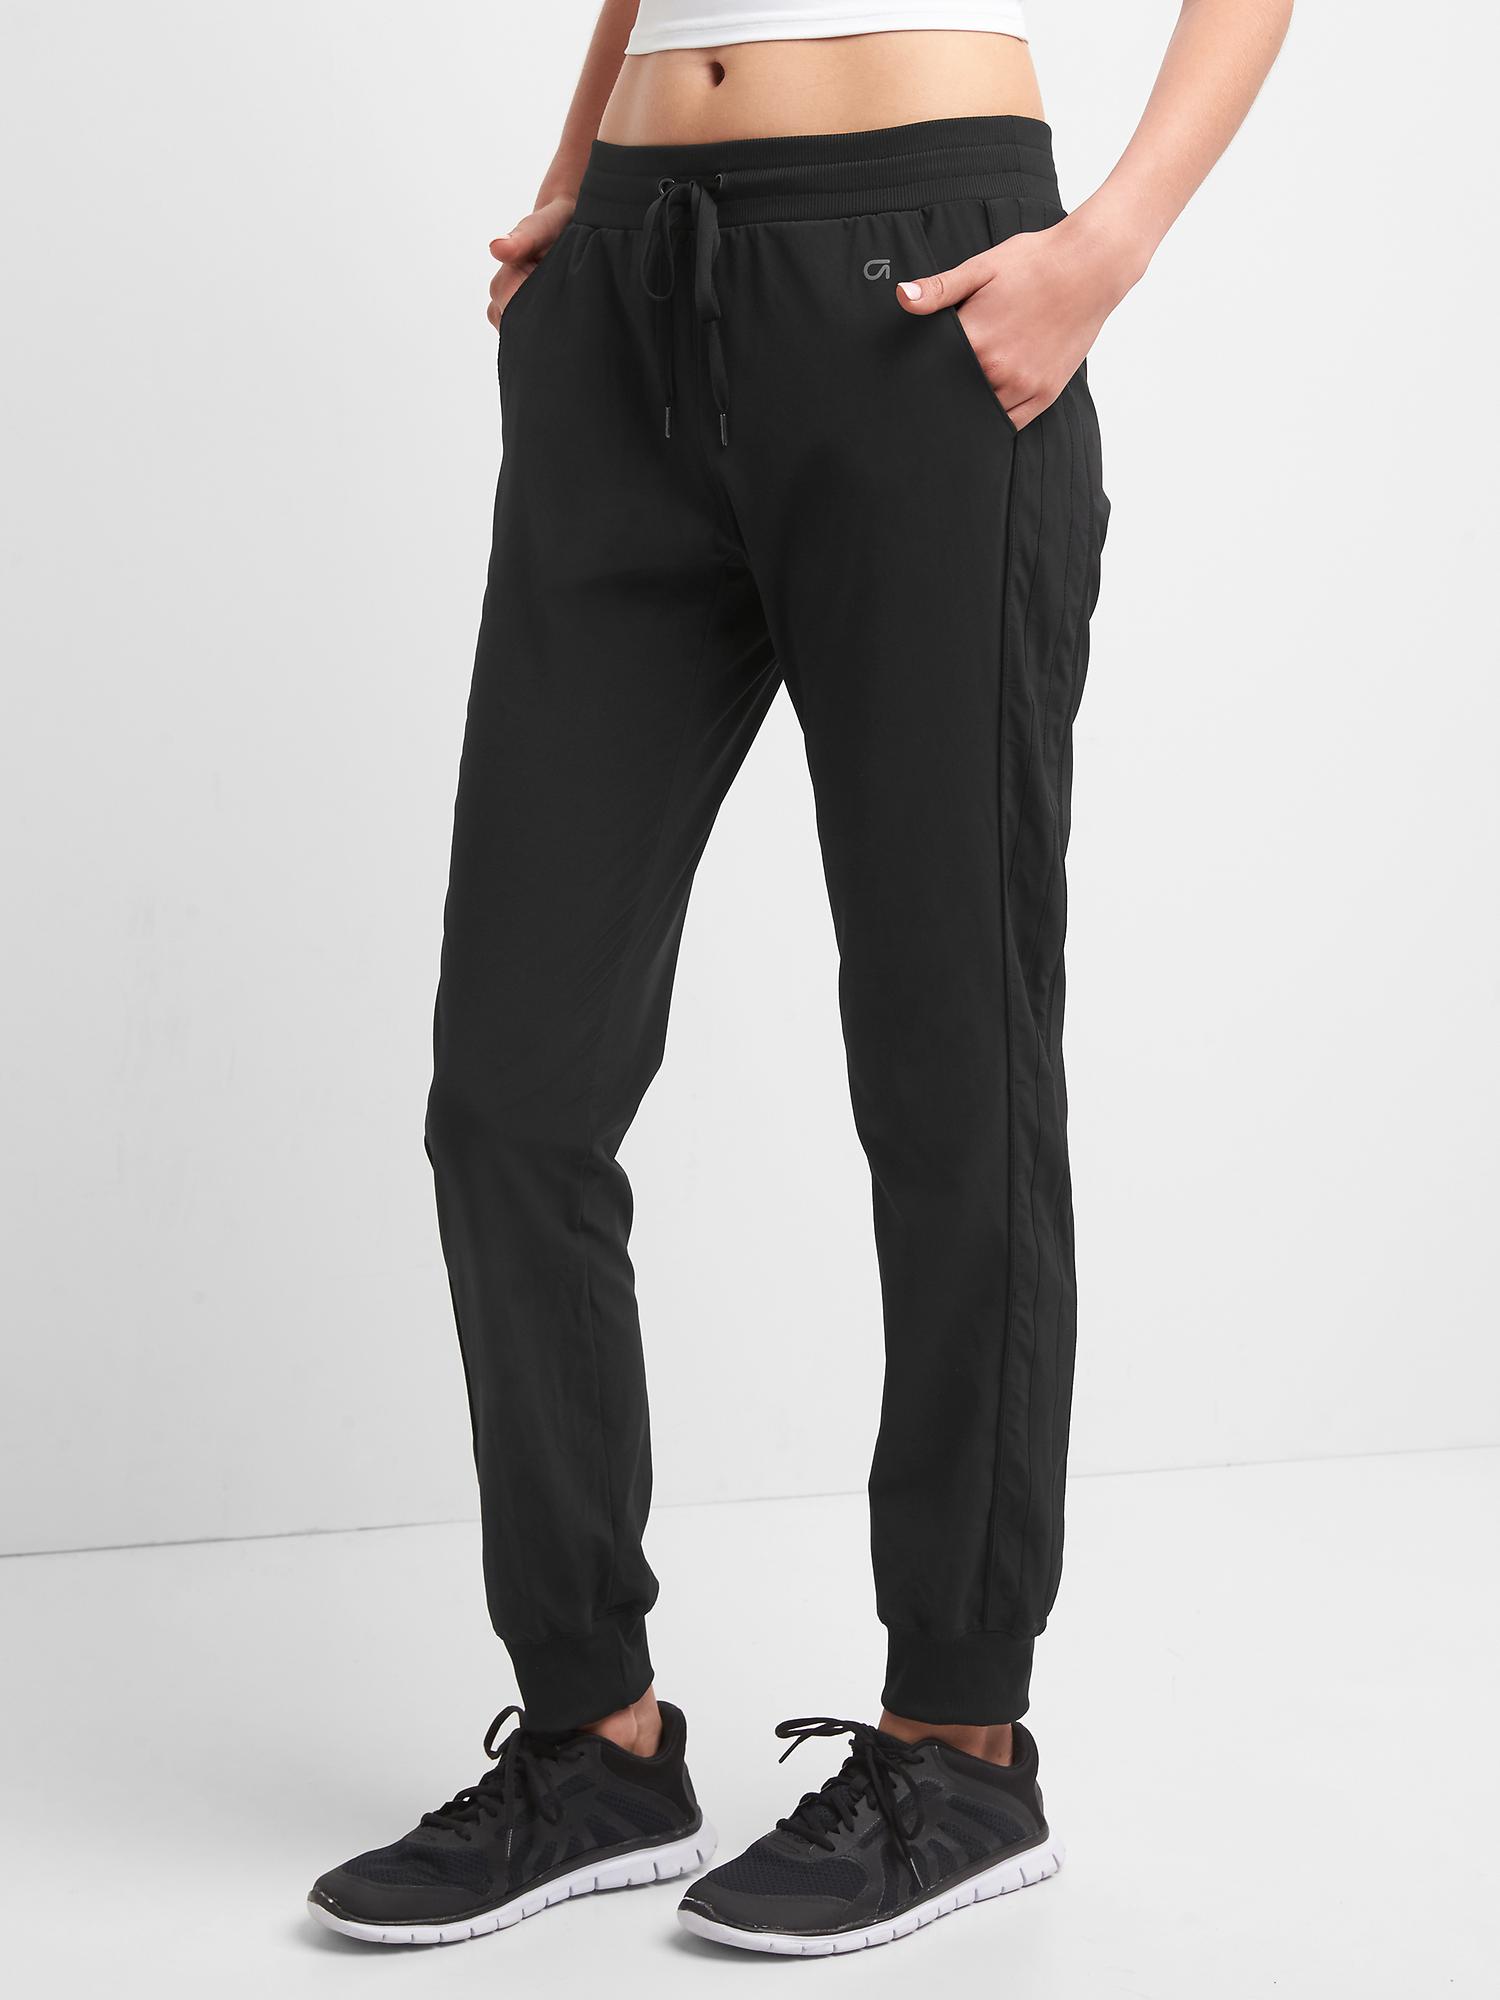 Lululemon Men's Black Joggers Sweatpants Tie Waist Cinch Ankle Size Small